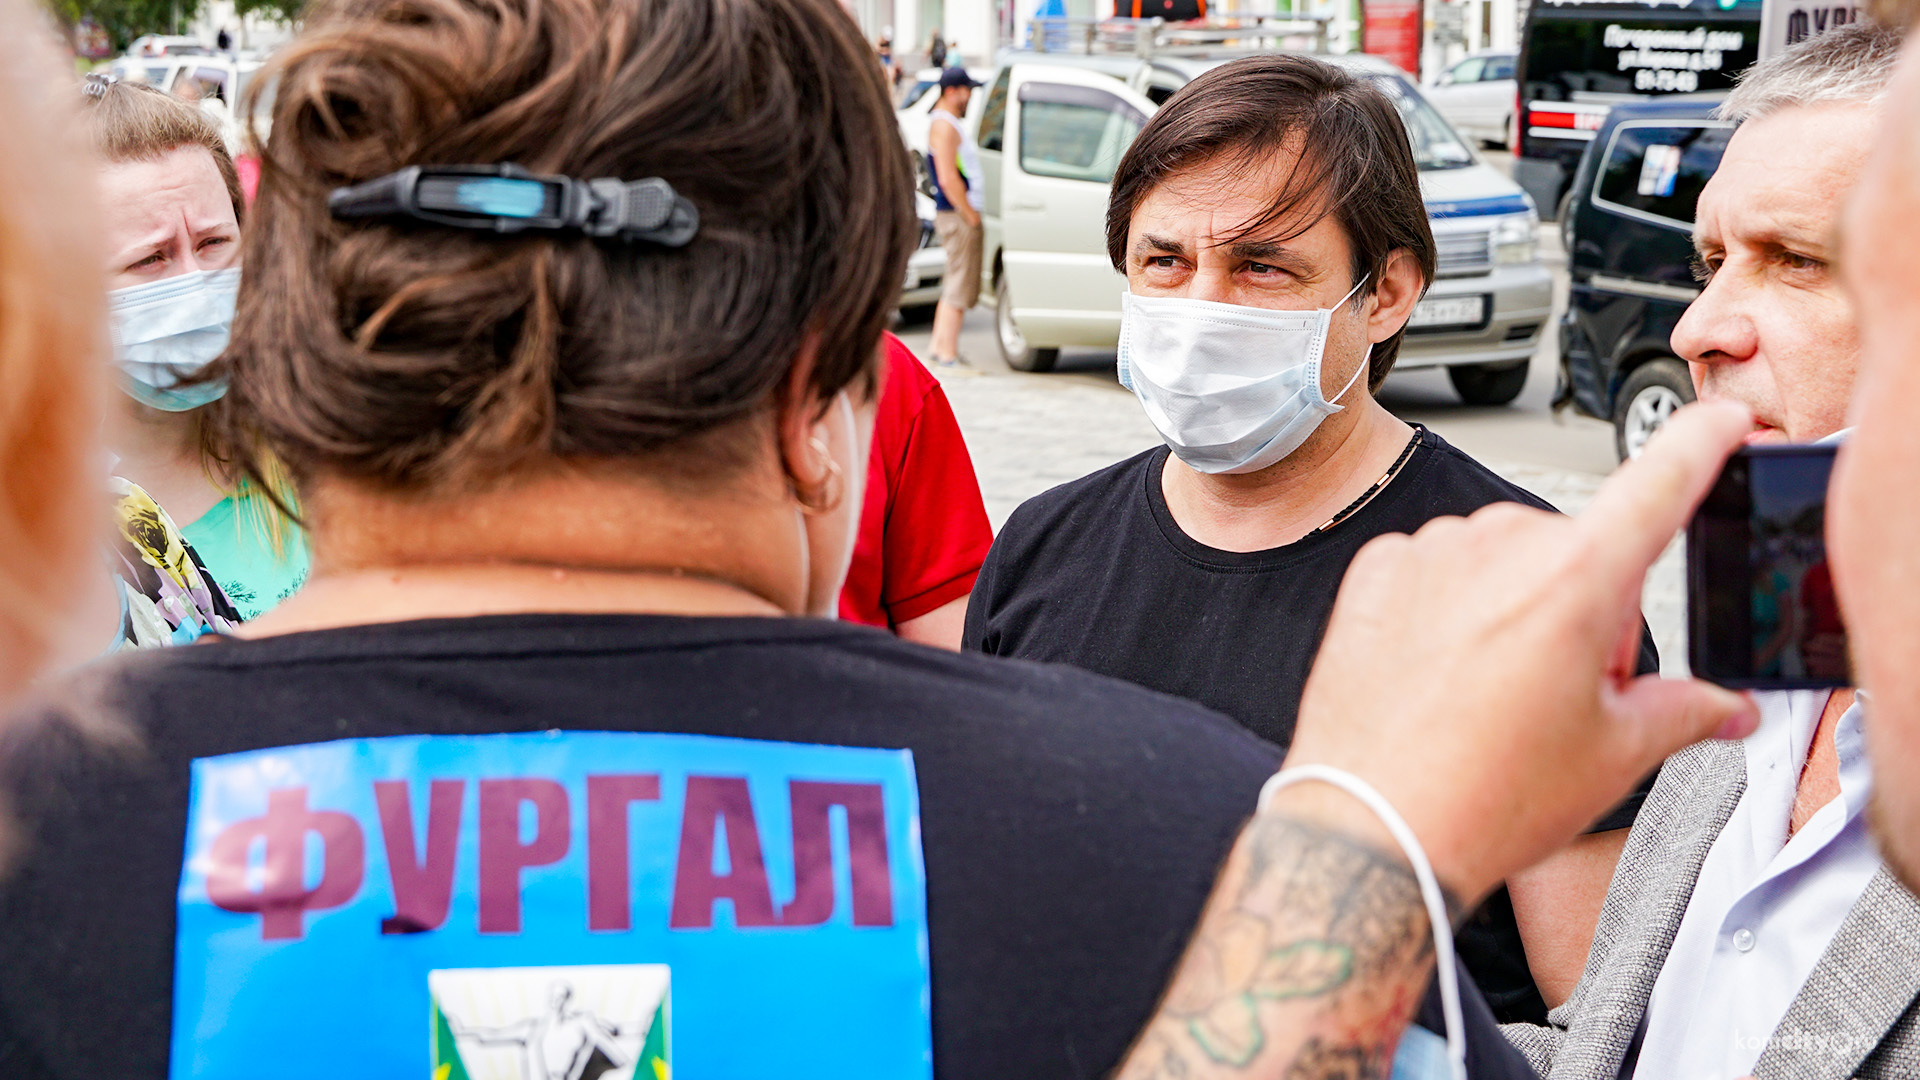 Александр Жорник рассказал, почему вышел к протестующим в прошлую субботу